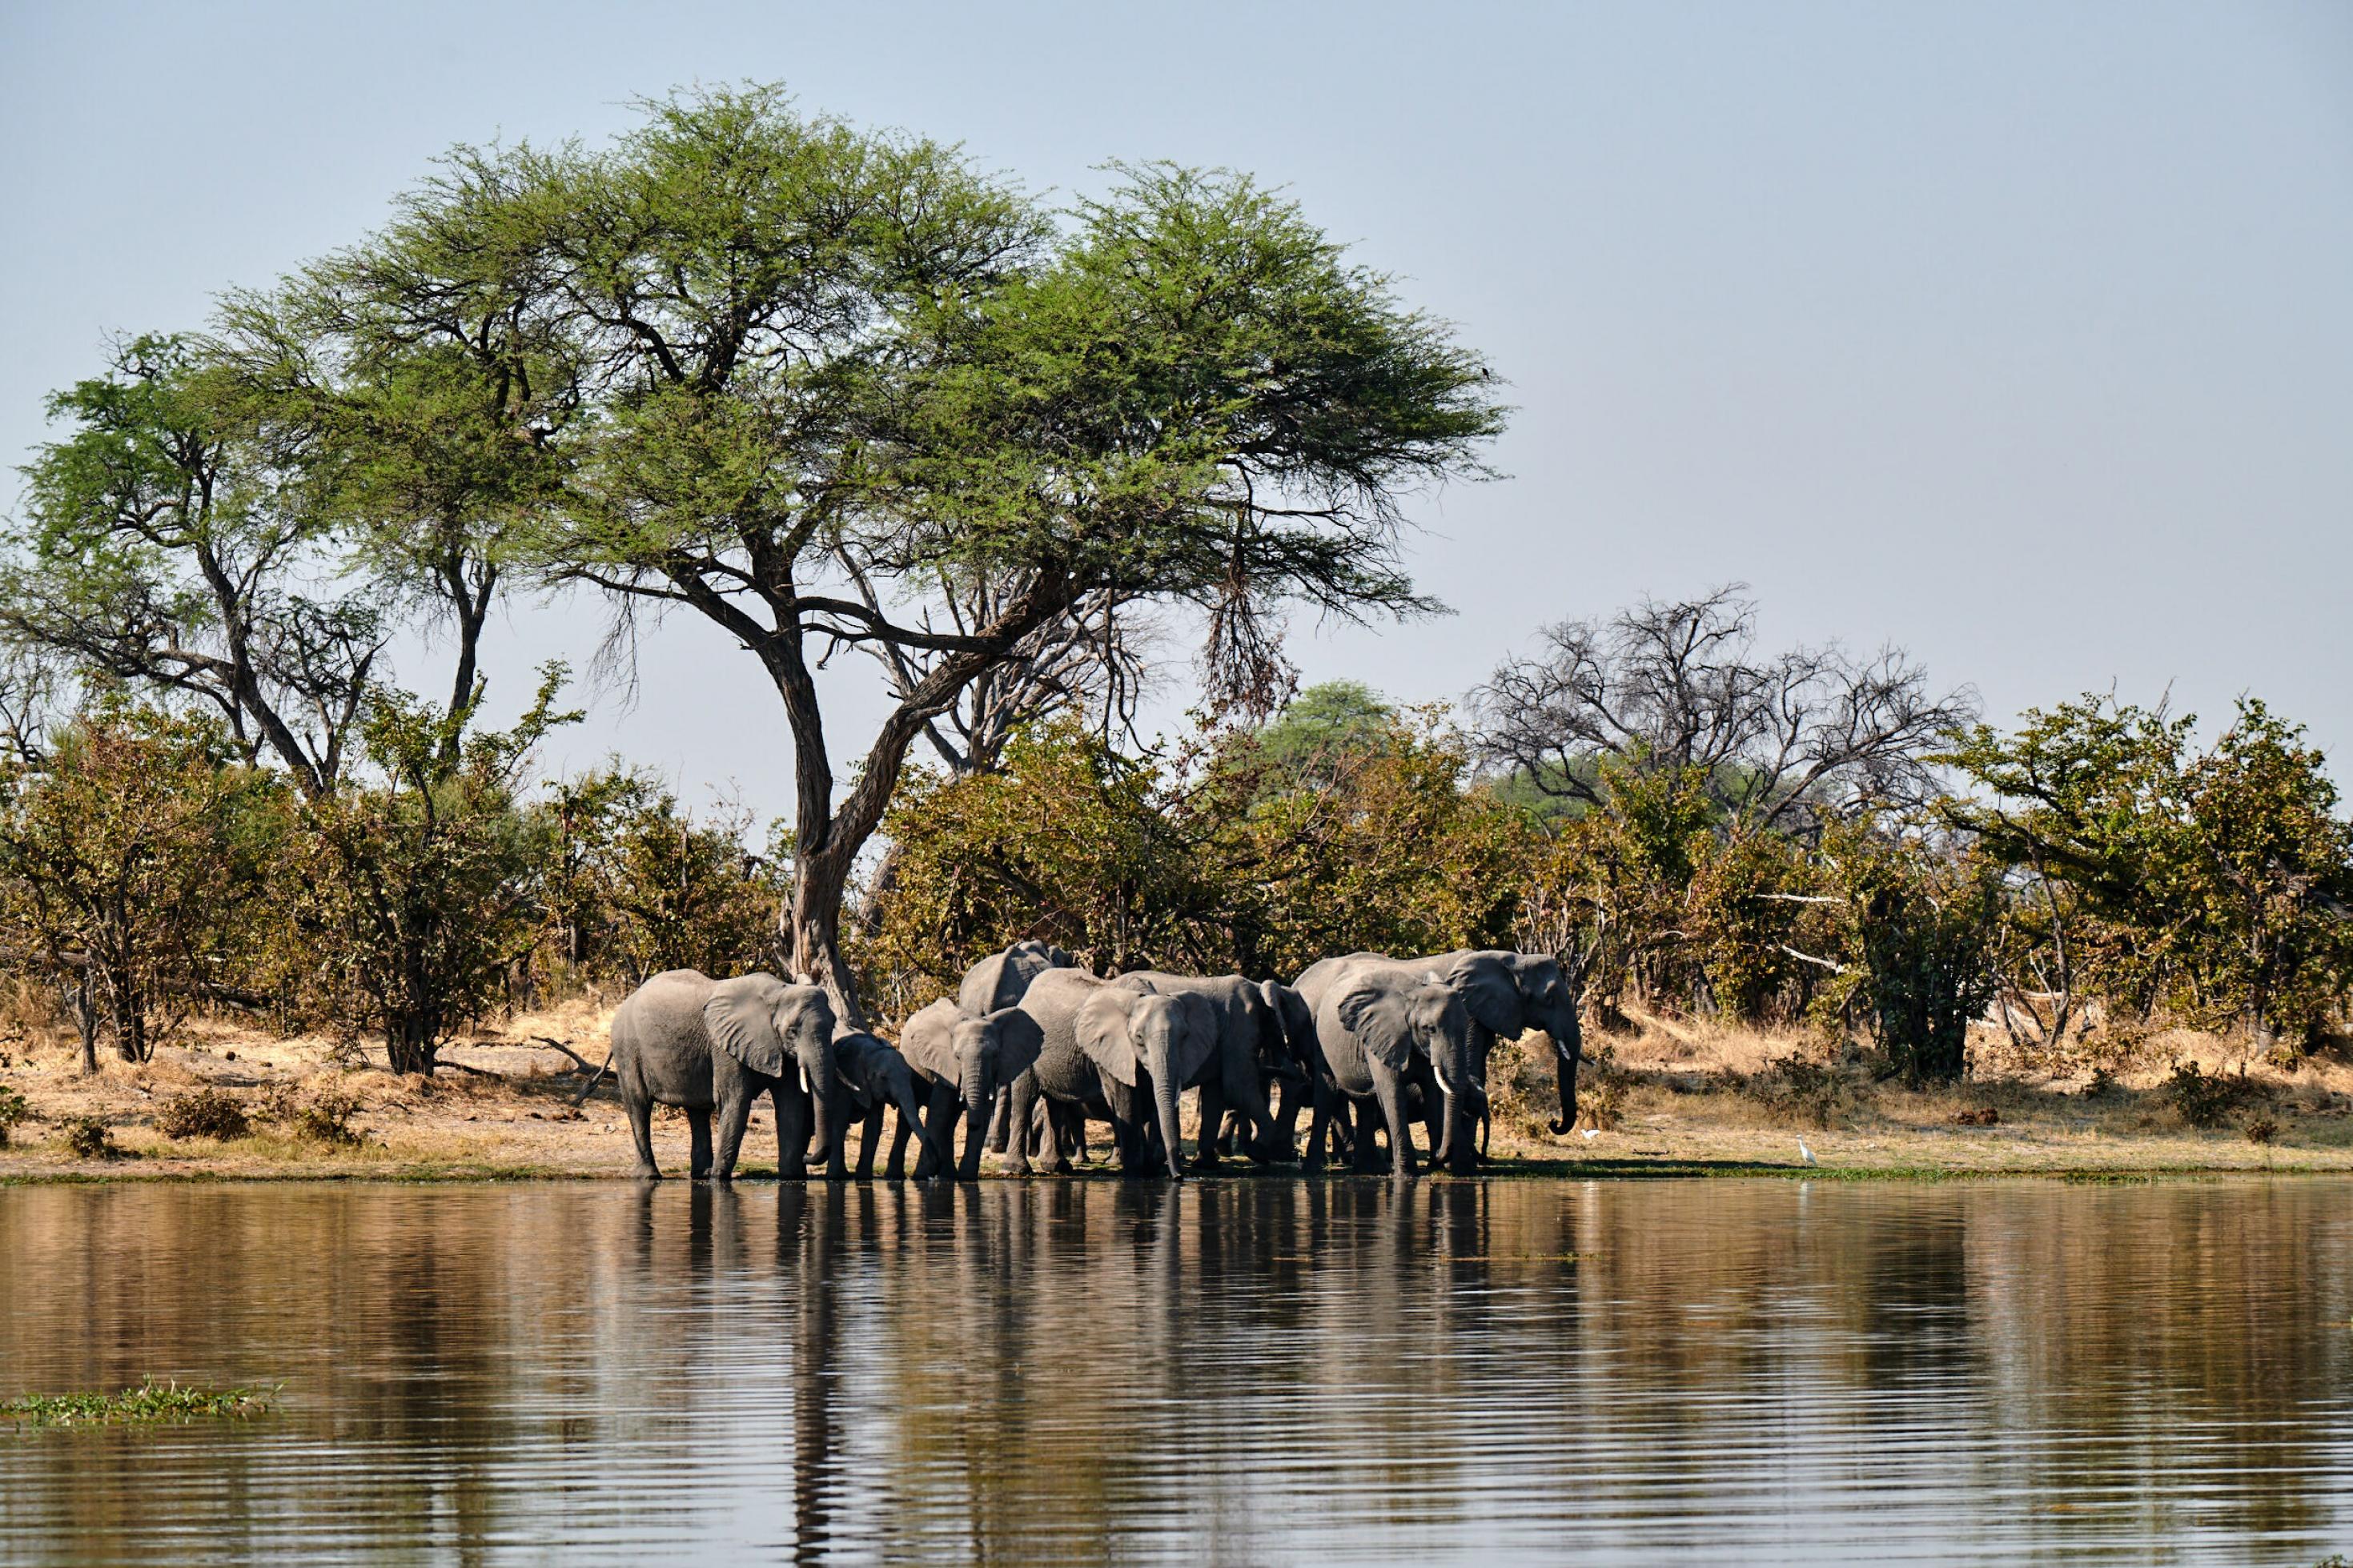 Am Ufer einer Wasserstelle unter einem großen Baum steht eine Elefantenherde